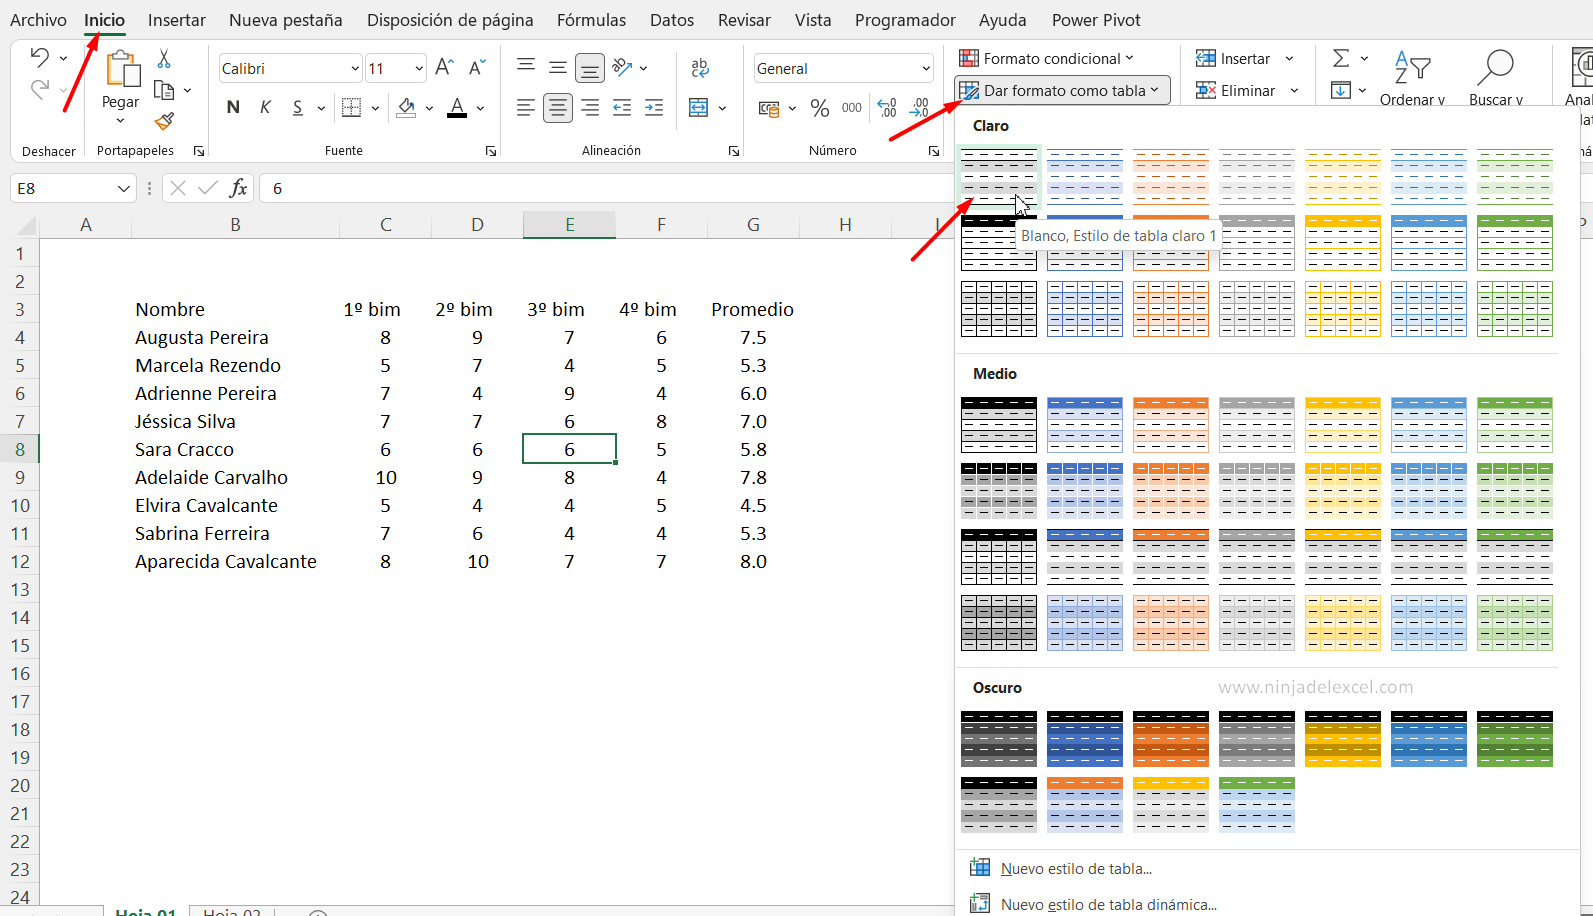 Formatear Hoja de Cálculo como Tabla en Excel